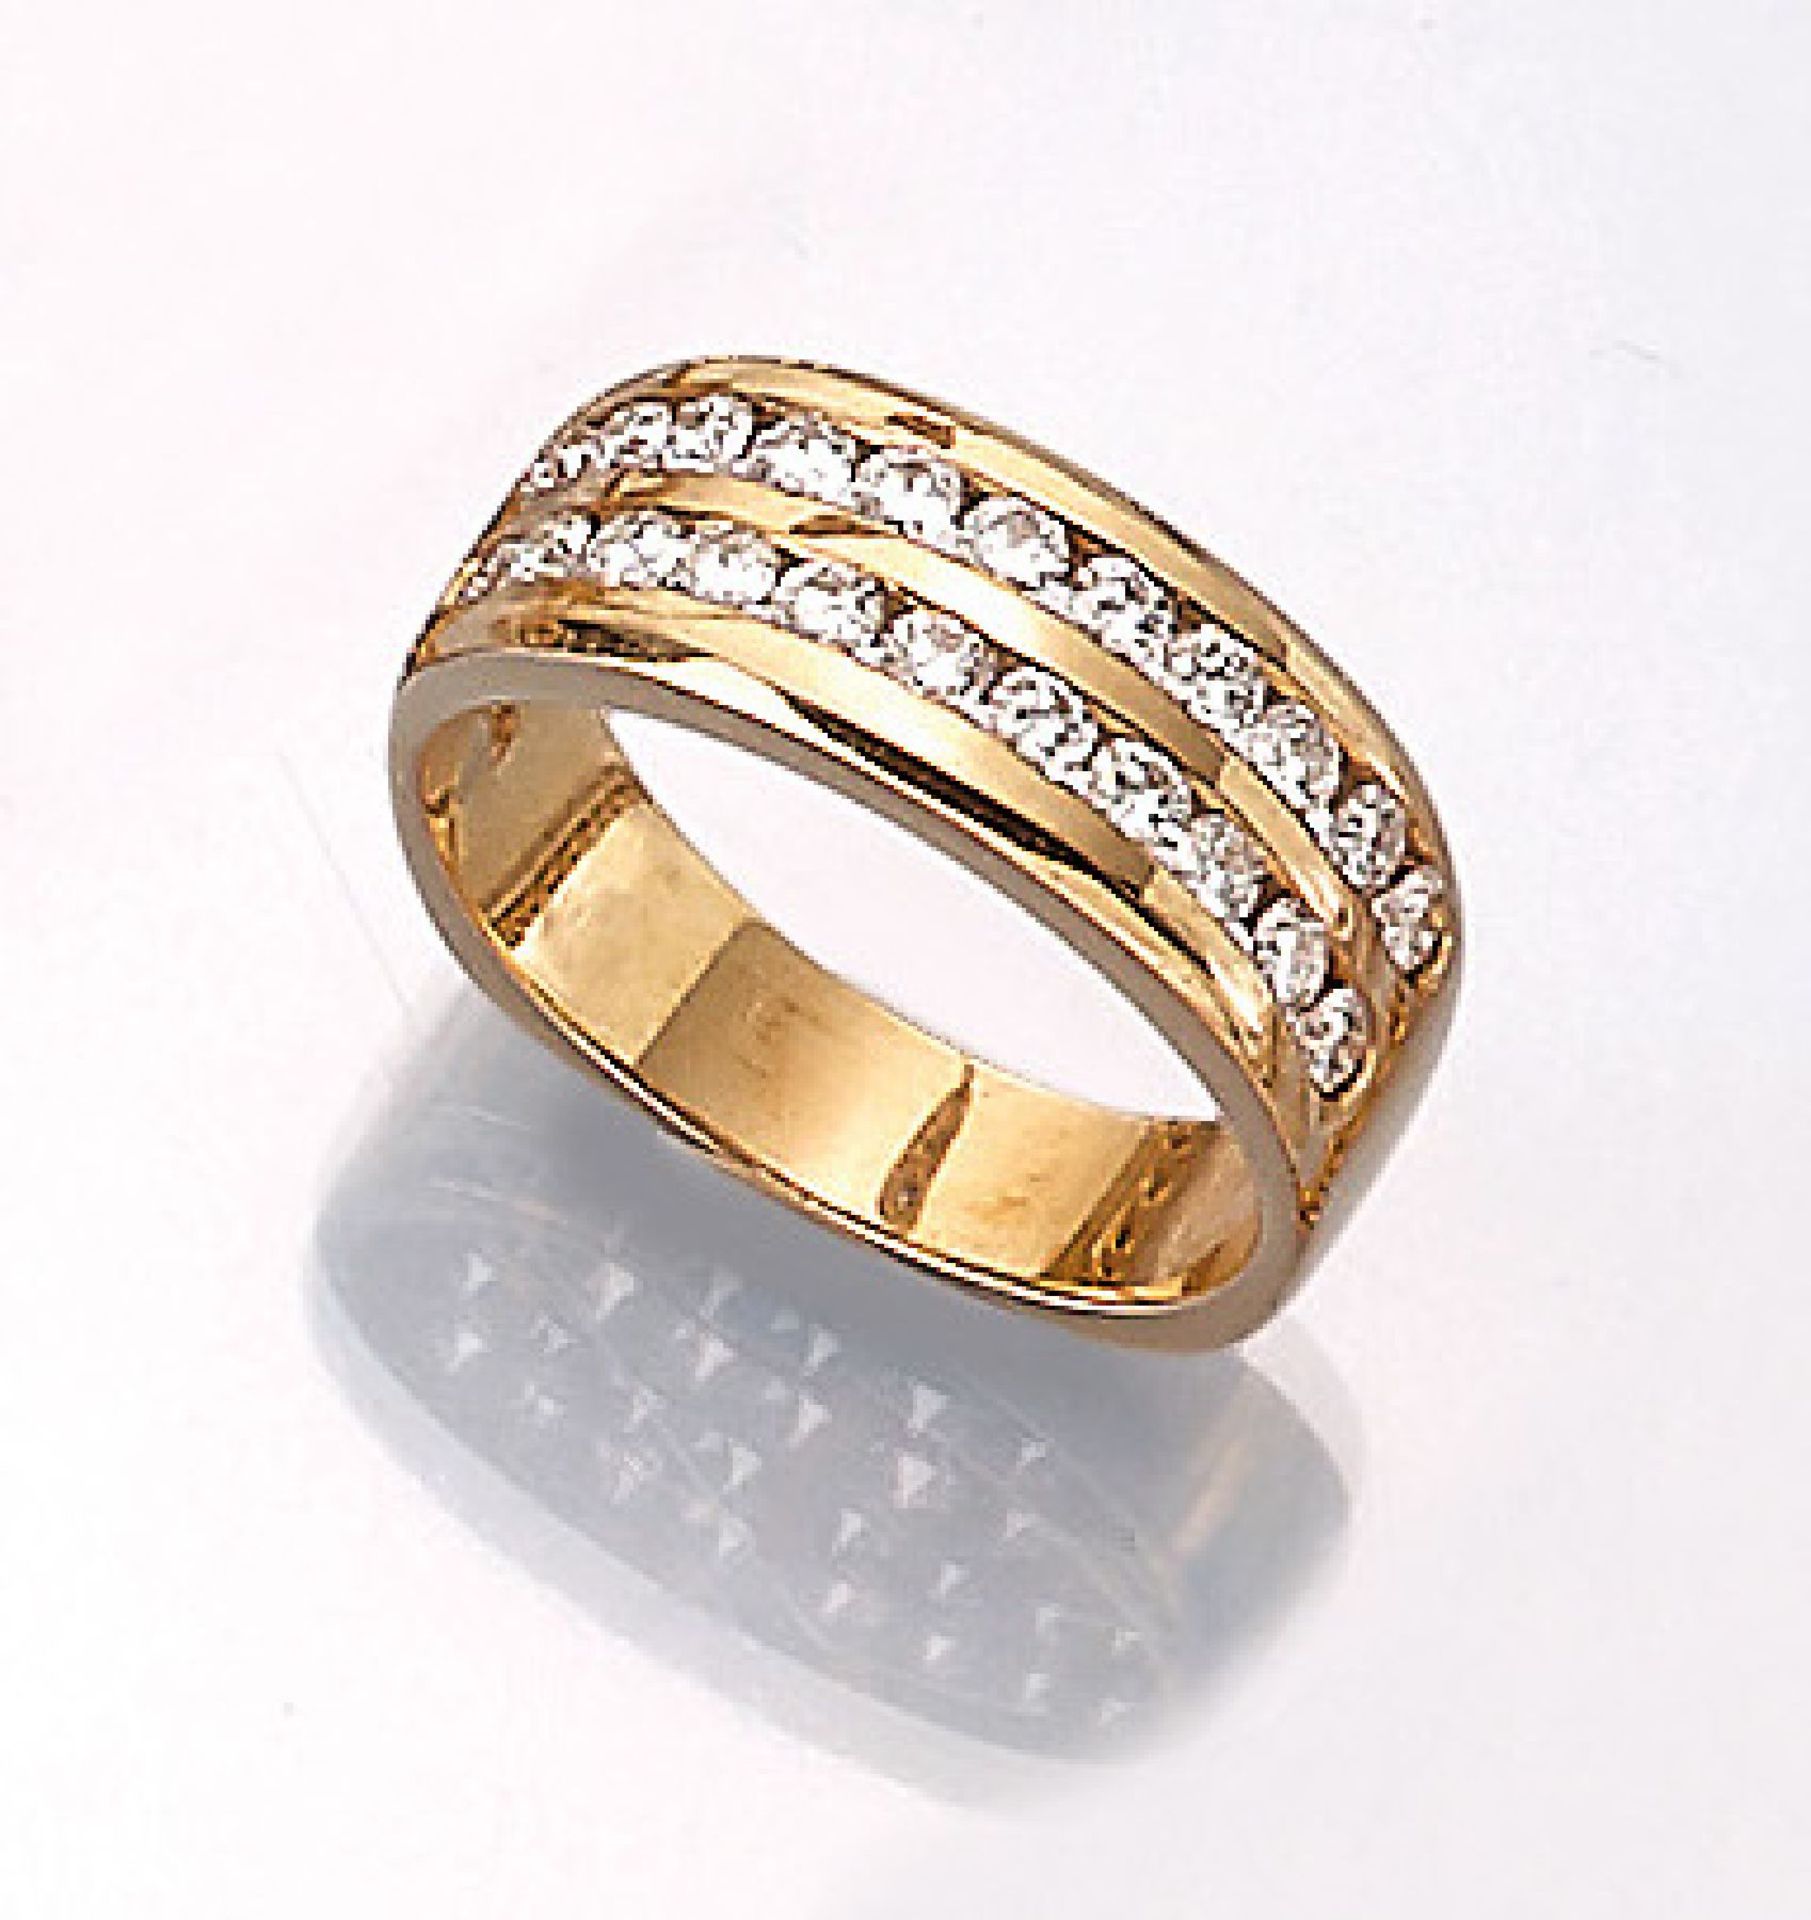 18 kt Gold Ring mit Brillanten, GG 750/000, Meistermarke HERBSTRITH, hochfeine Qualität, 22 Brill.